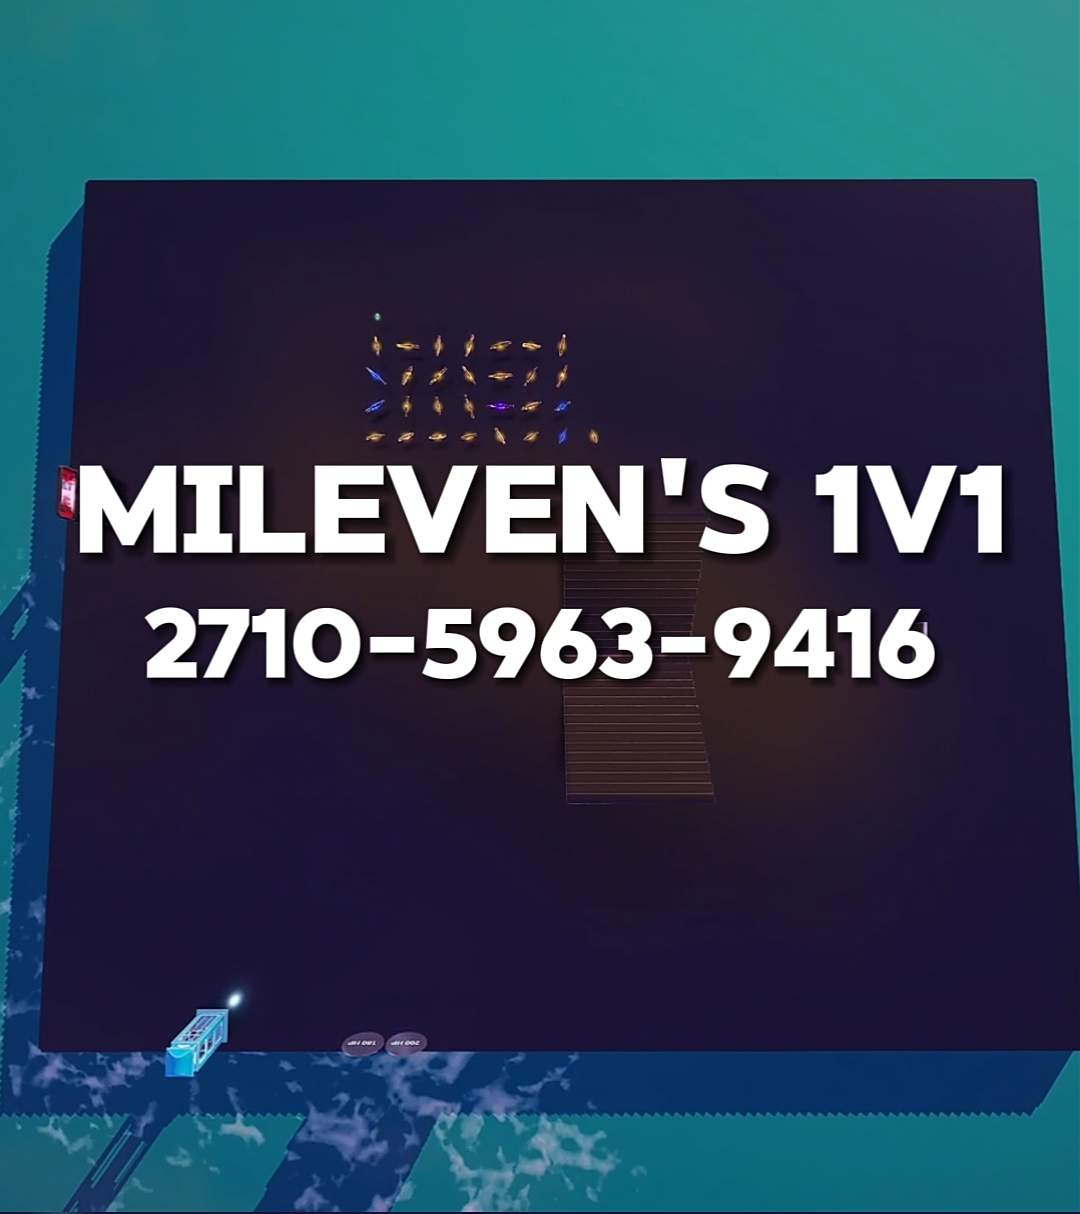 Mileven's 1v1